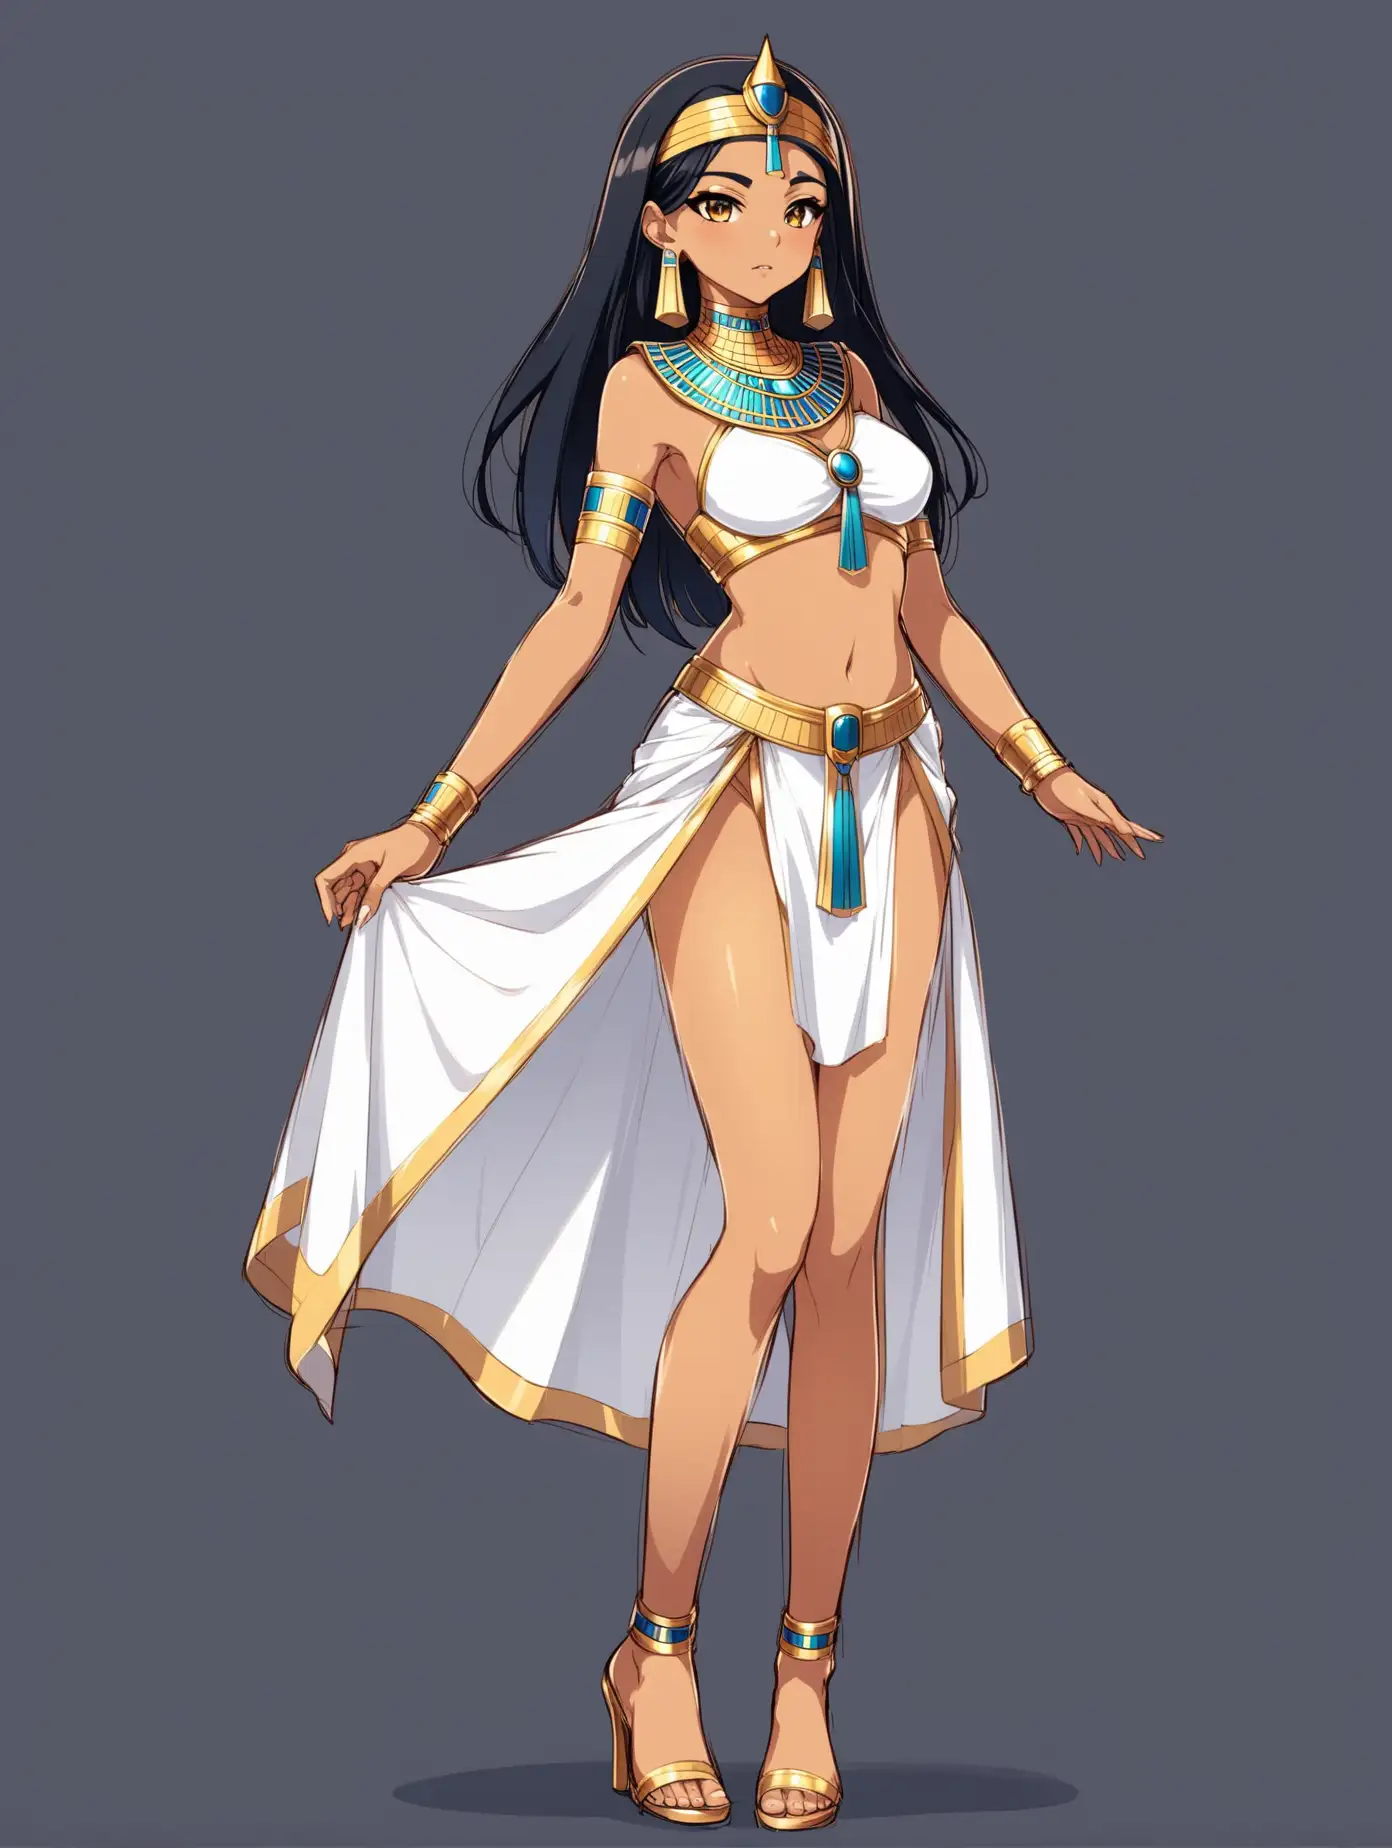 Anime queen egyptian girl, full body, 2 poses